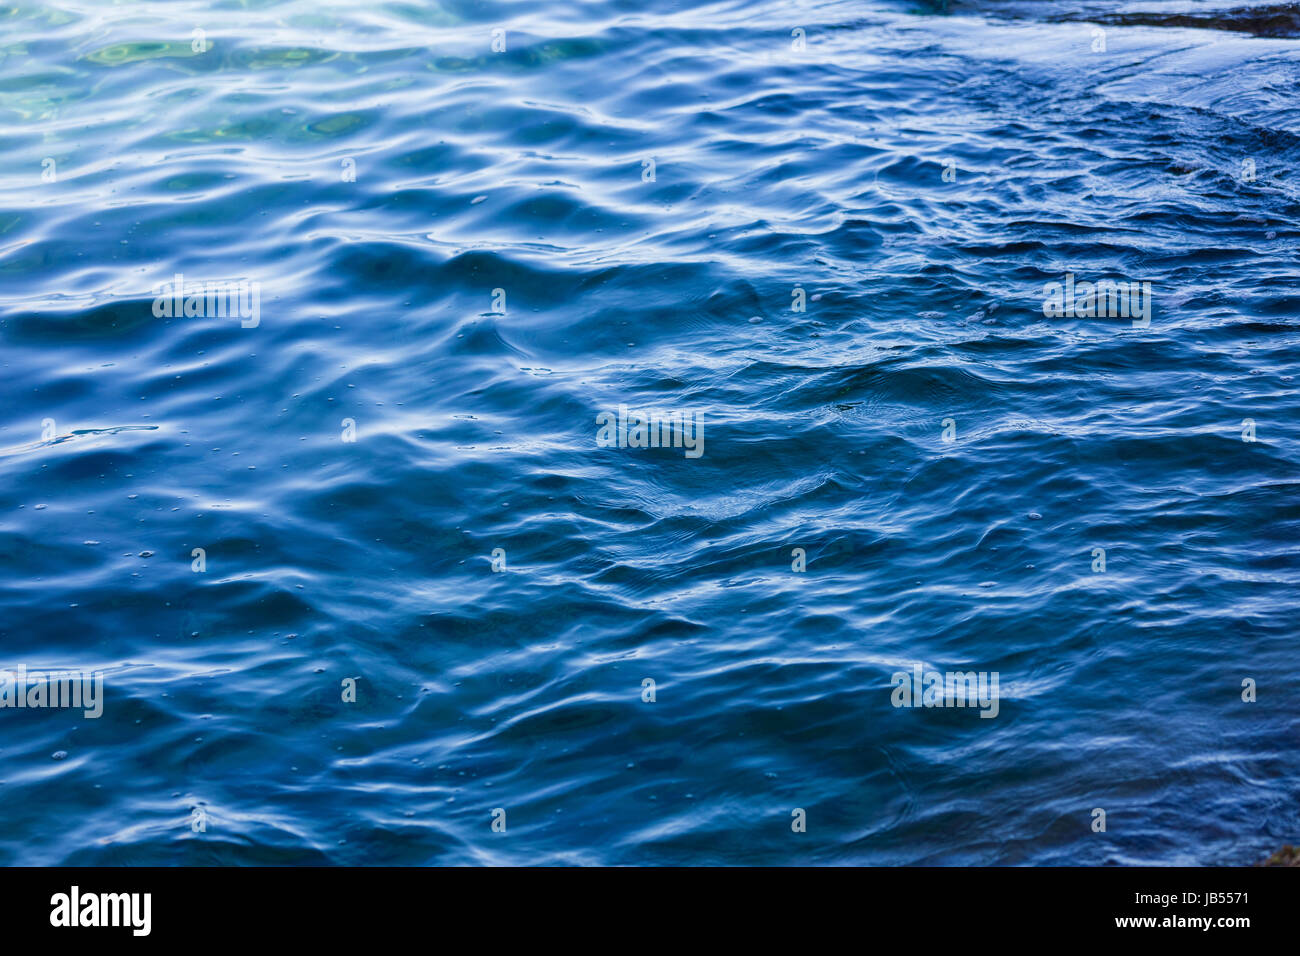 Calme acque torbide, foto dall'alto che mostra la superficie del mare, sfondo astratto e carta da parati Foto Stock